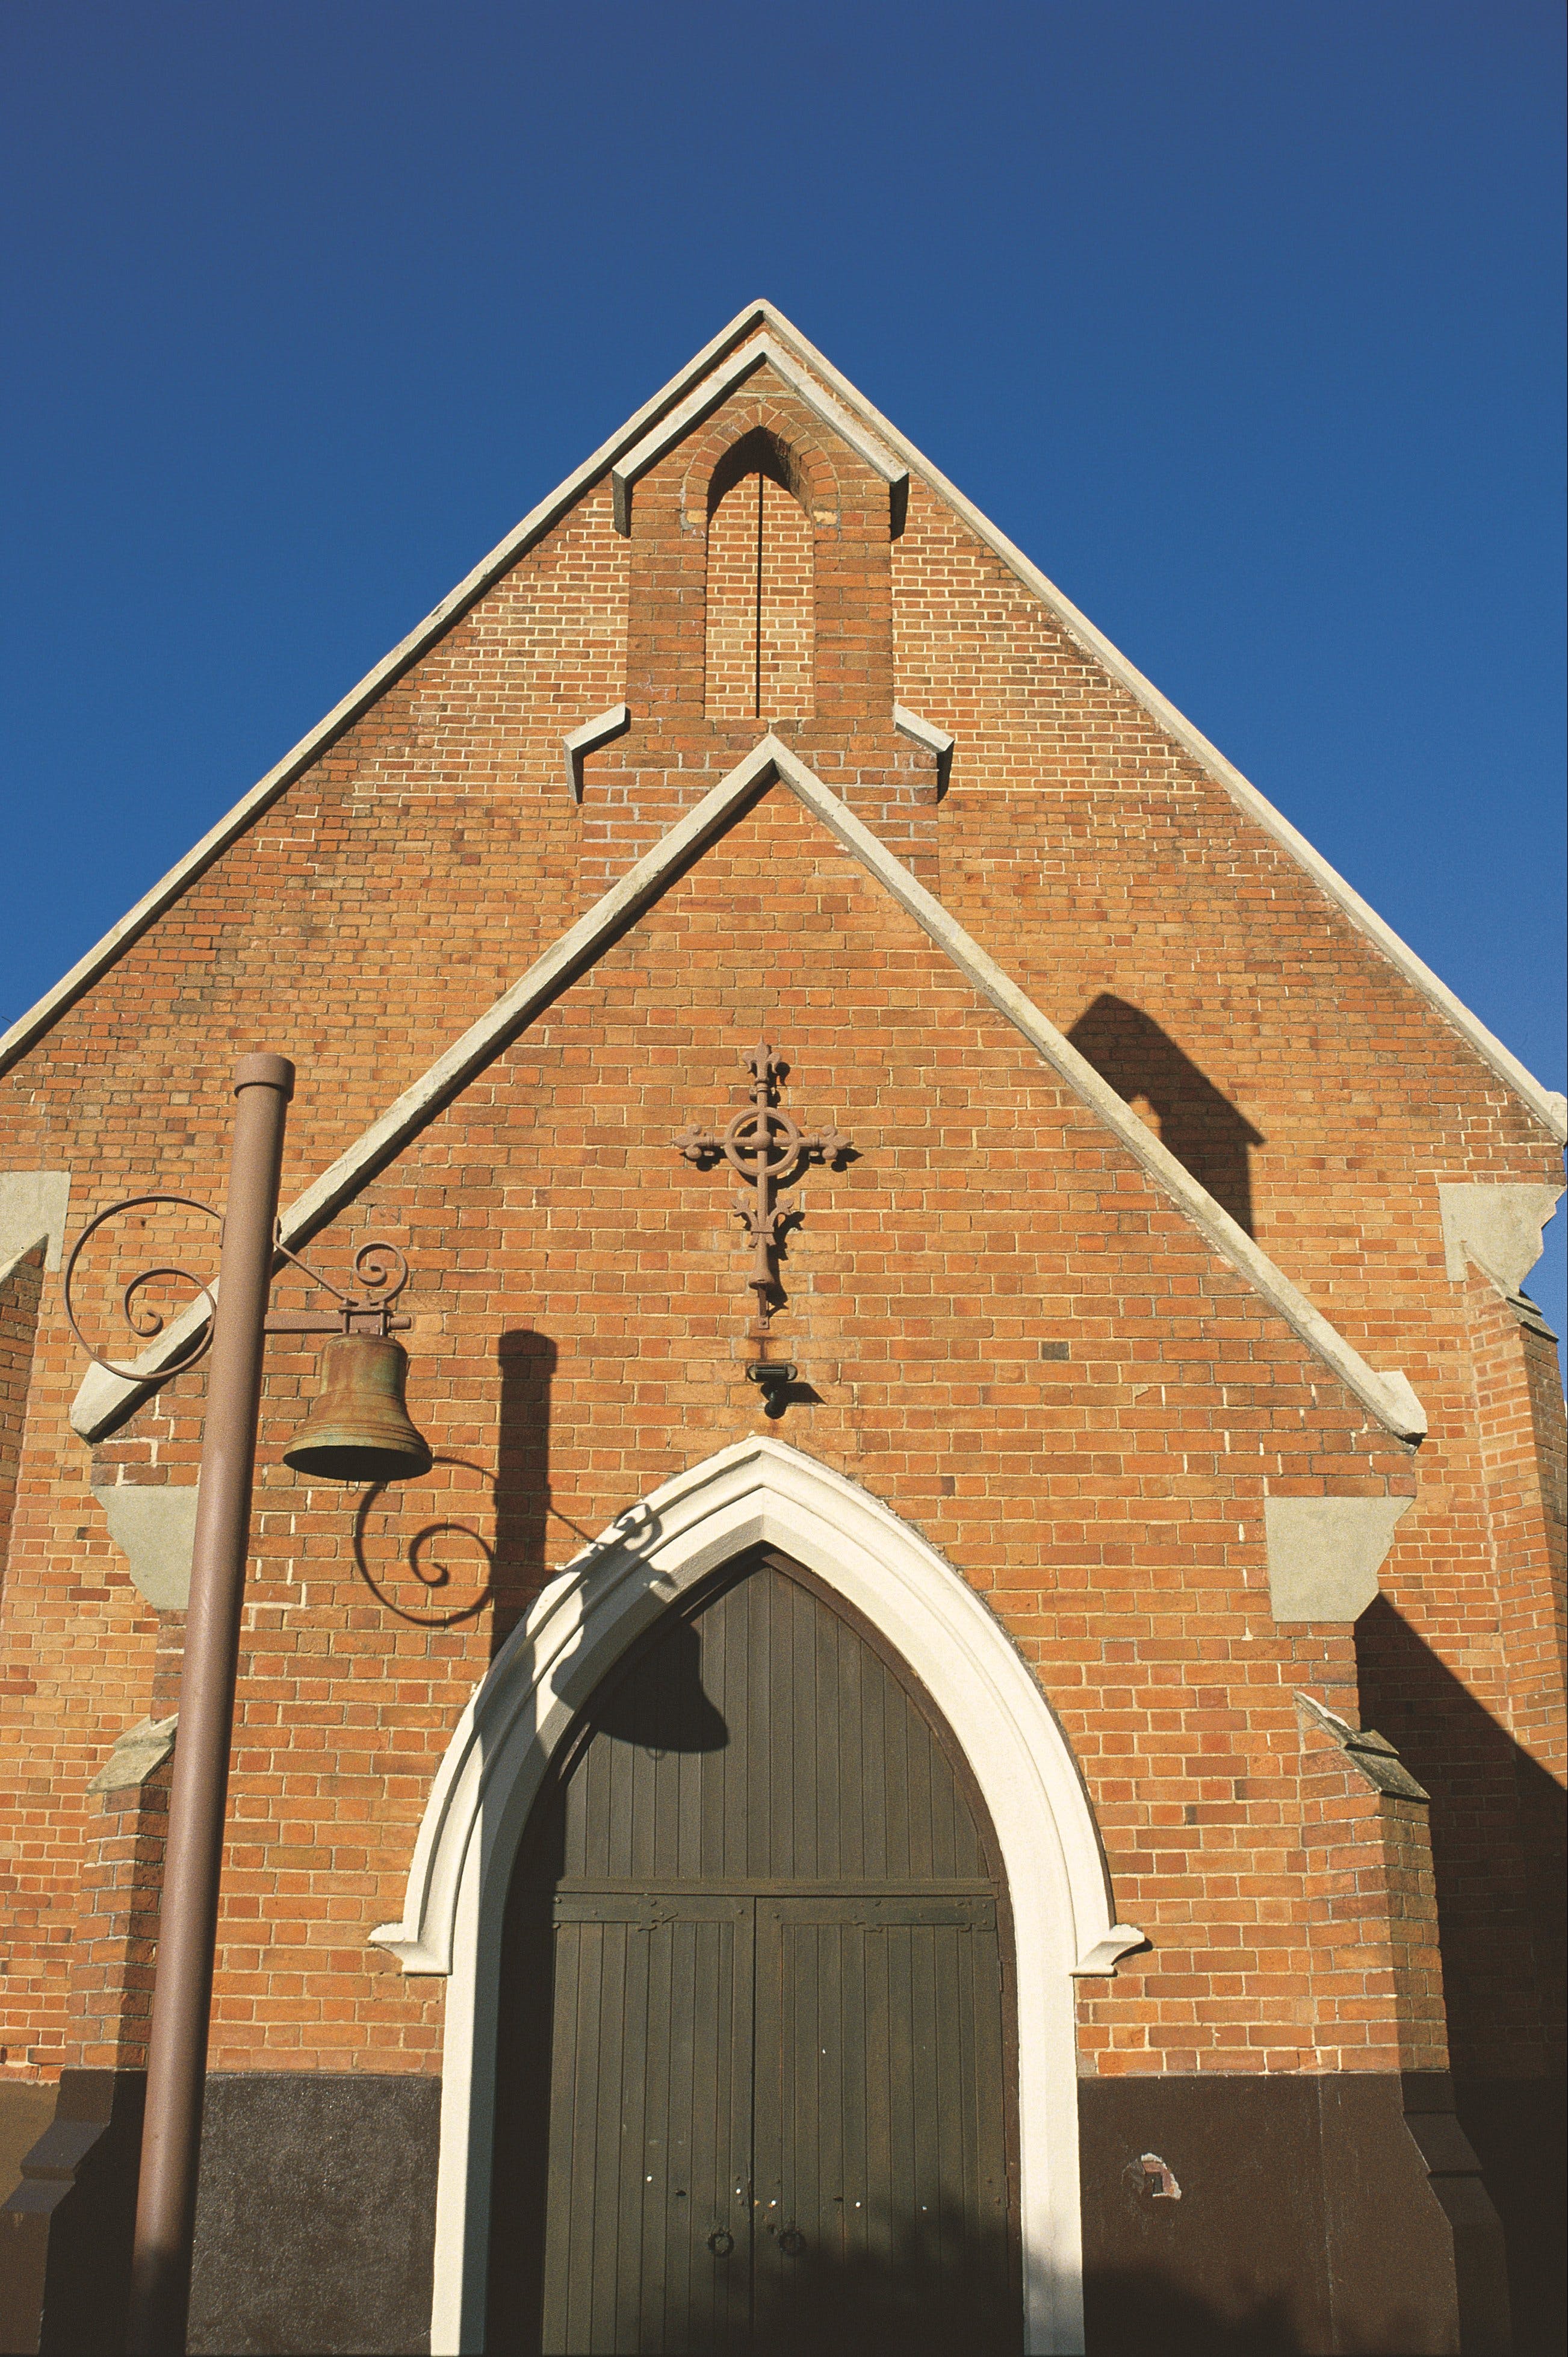 Saint Matthews Church - Accommodation Brunswick Heads